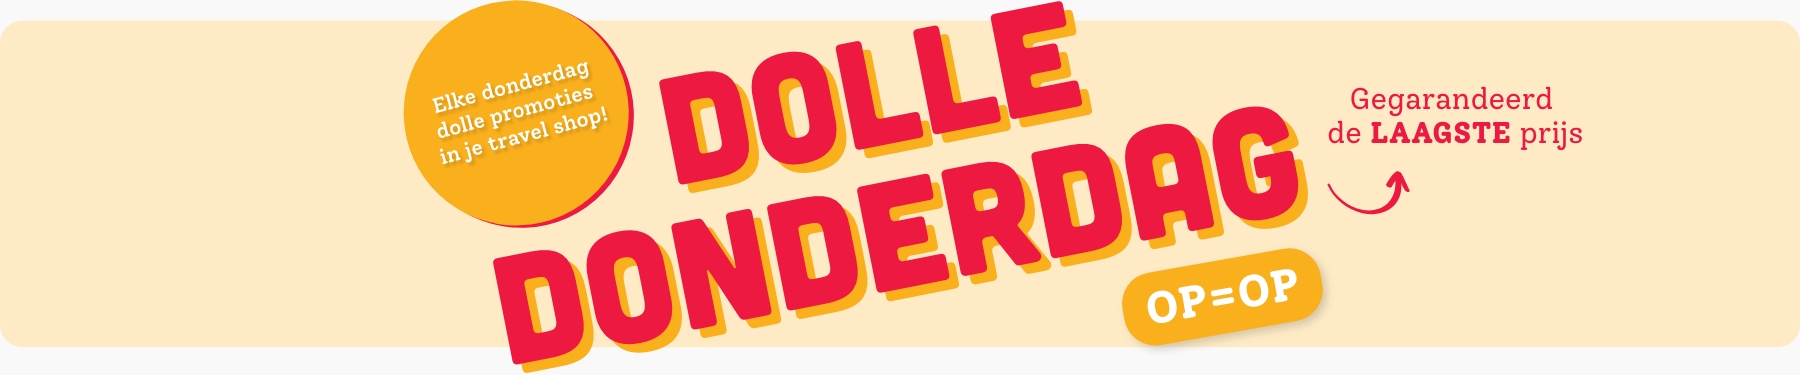 Dolle Donderdag banner op travel shops pagina 